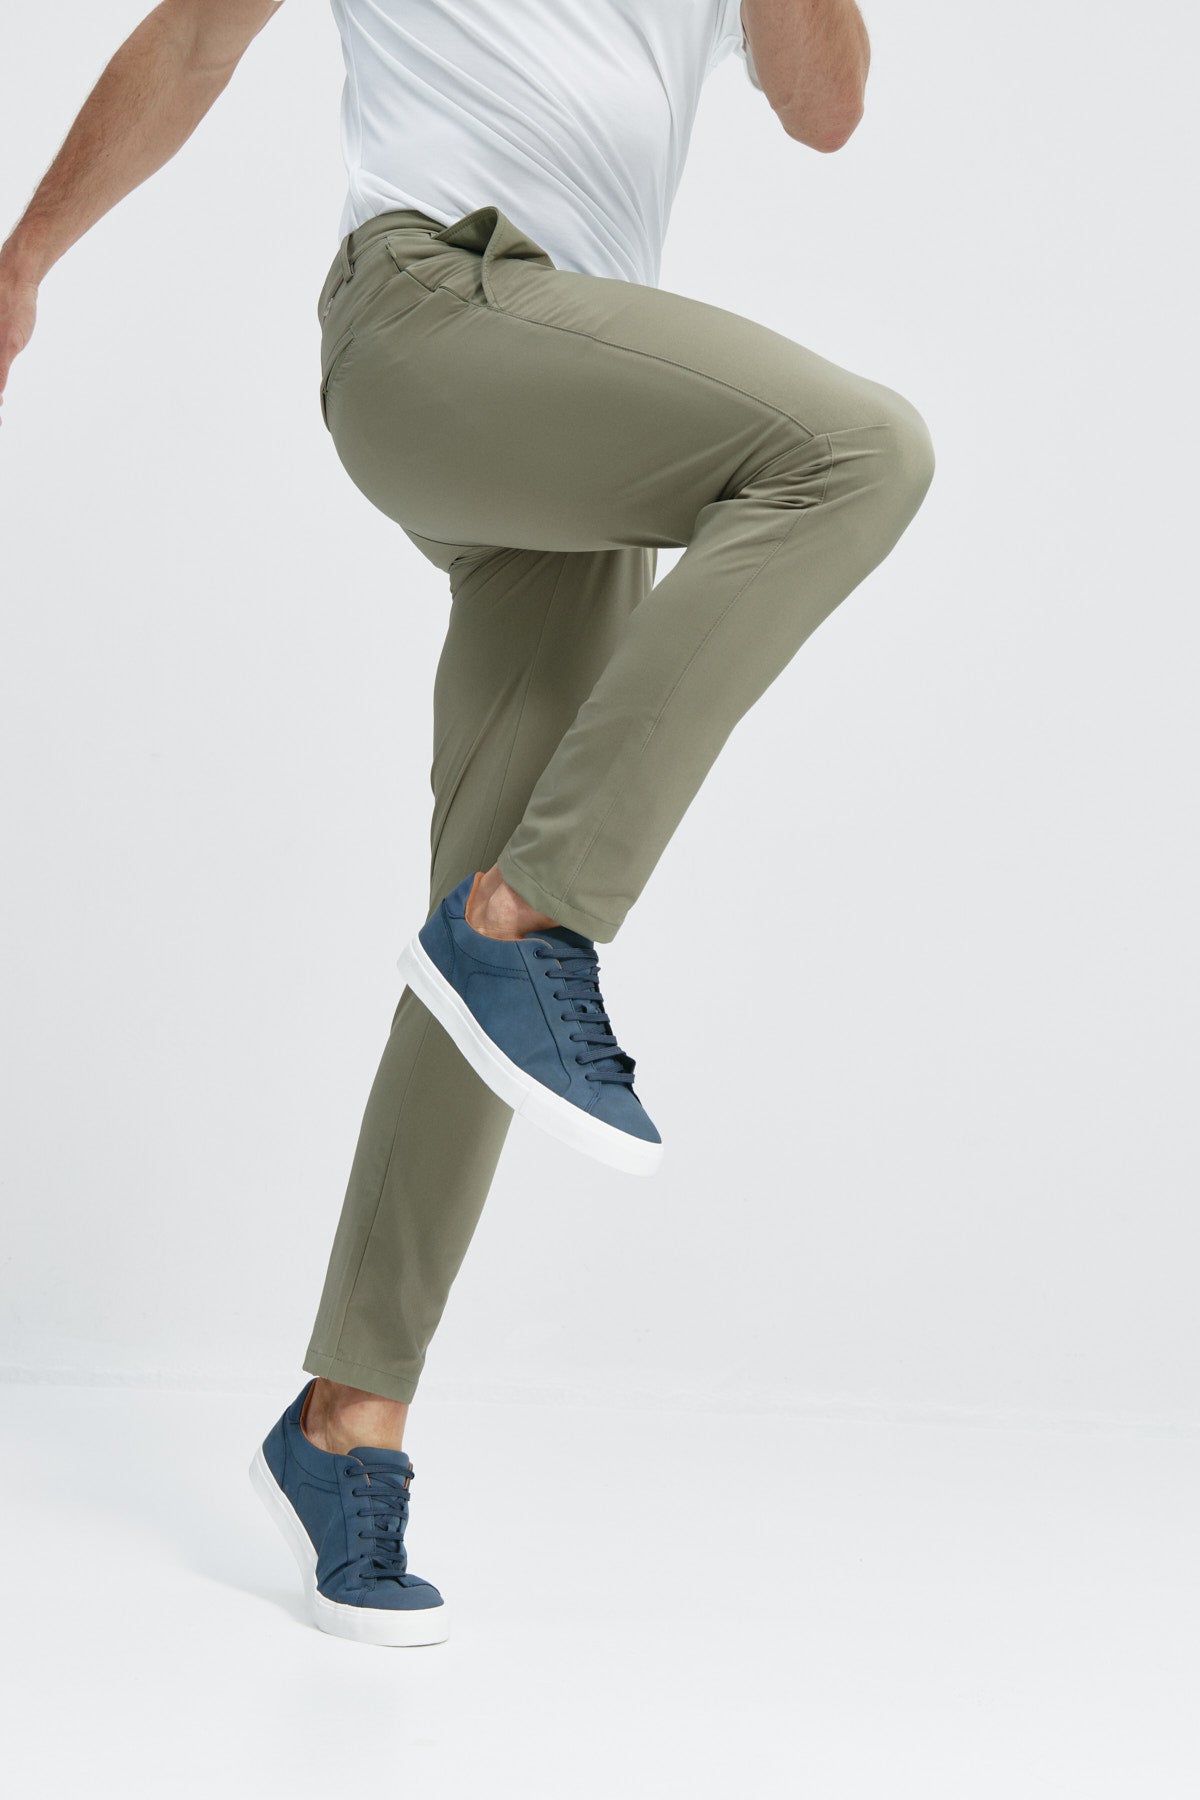 Pantalón de hombre que realza la figura y proporciona total libertad de movimiento. Foto flexibilidad.